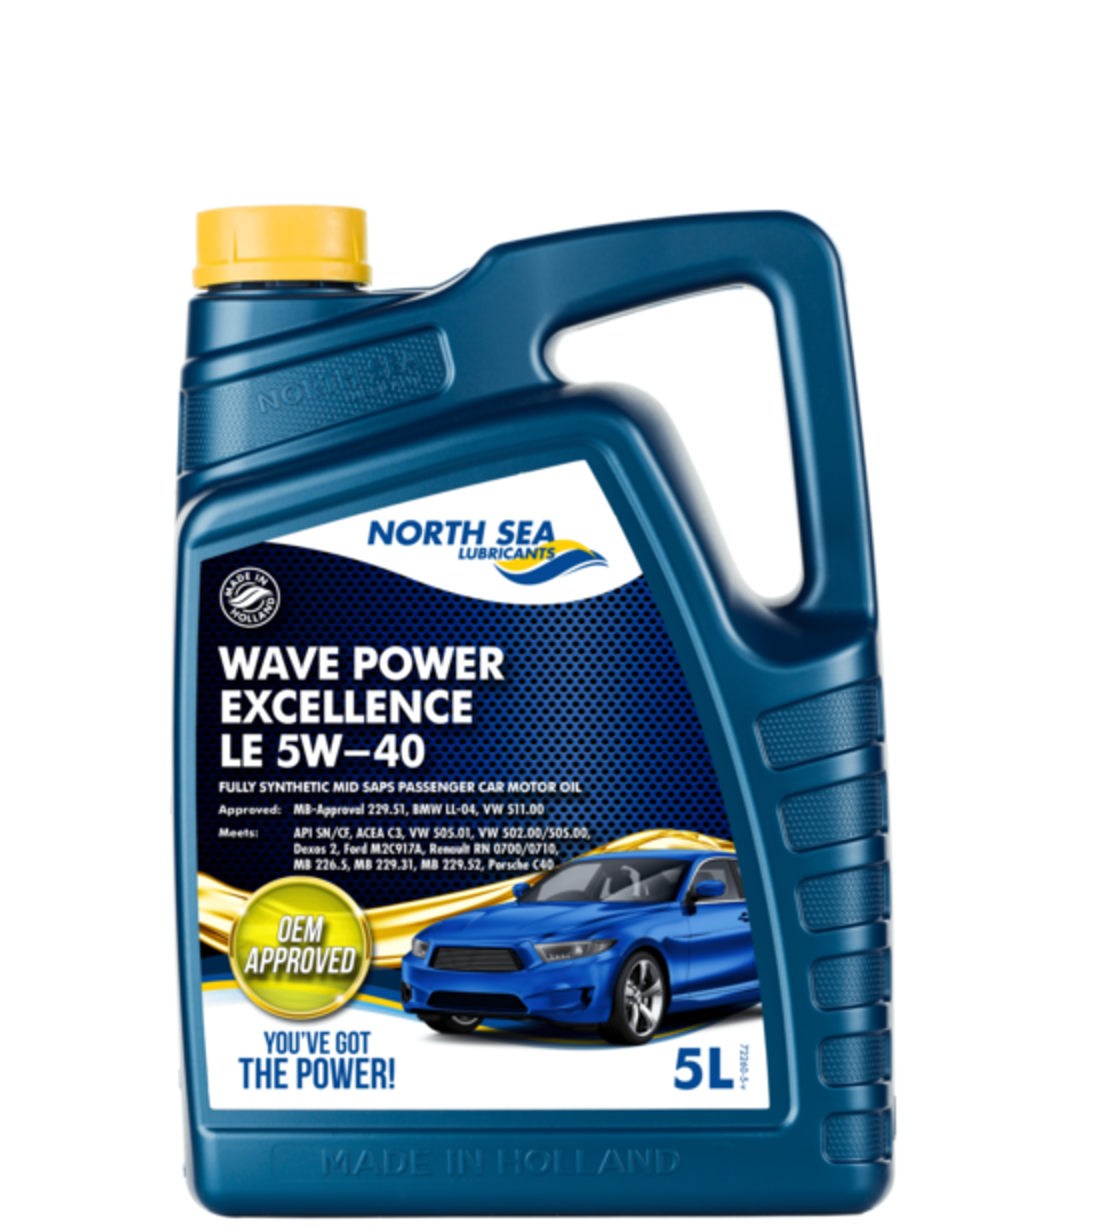 WAVE POWER EXCELLENCE LE 5W-40  5L